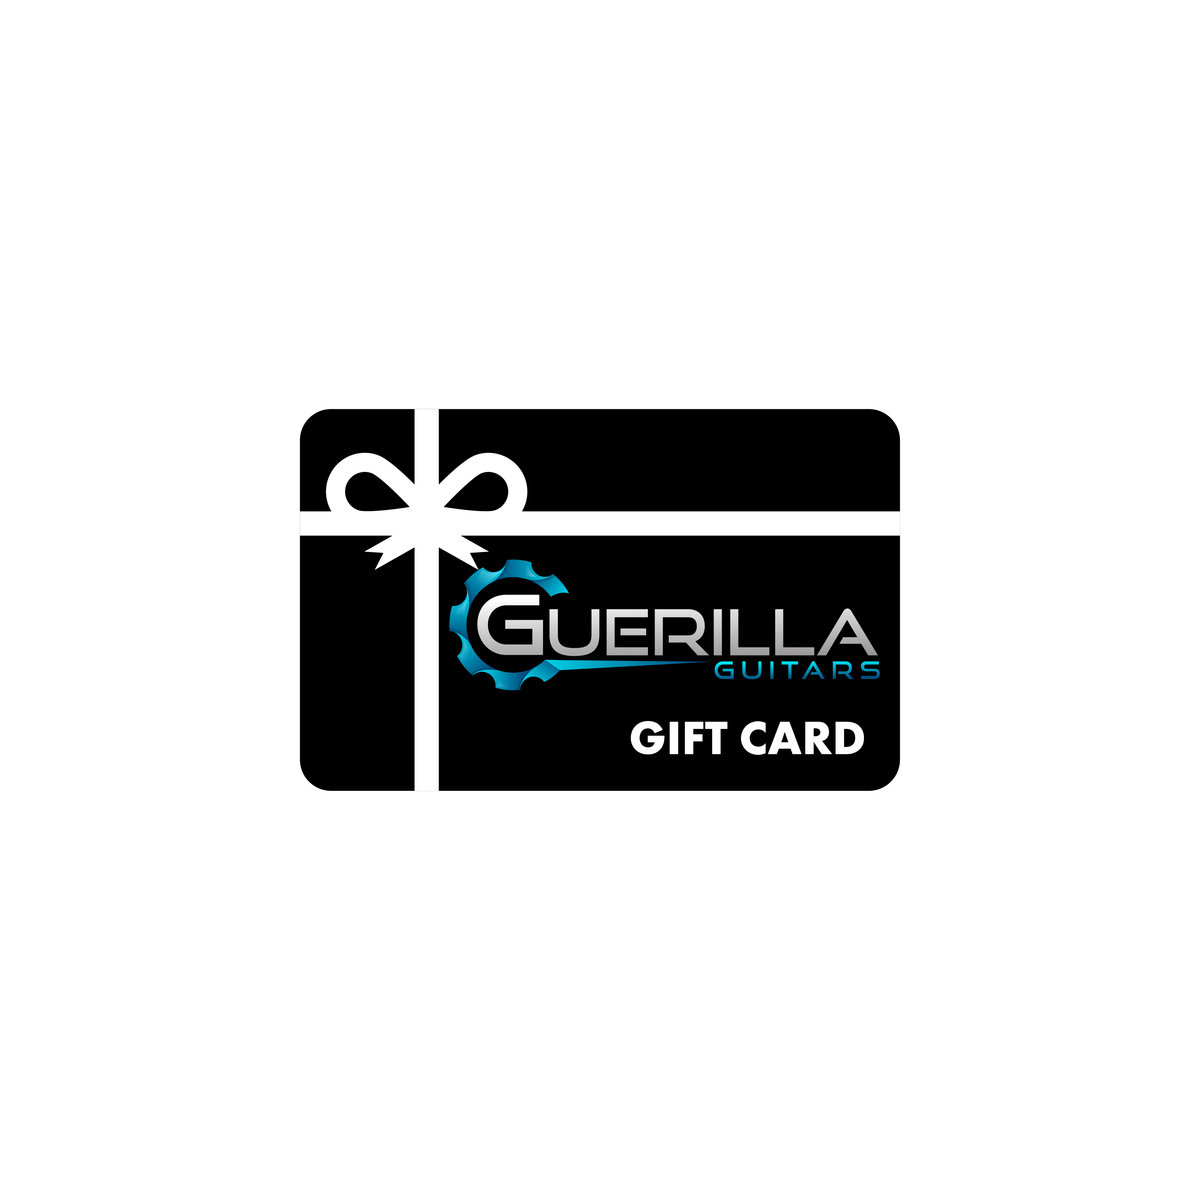 Guerilla Gift Card